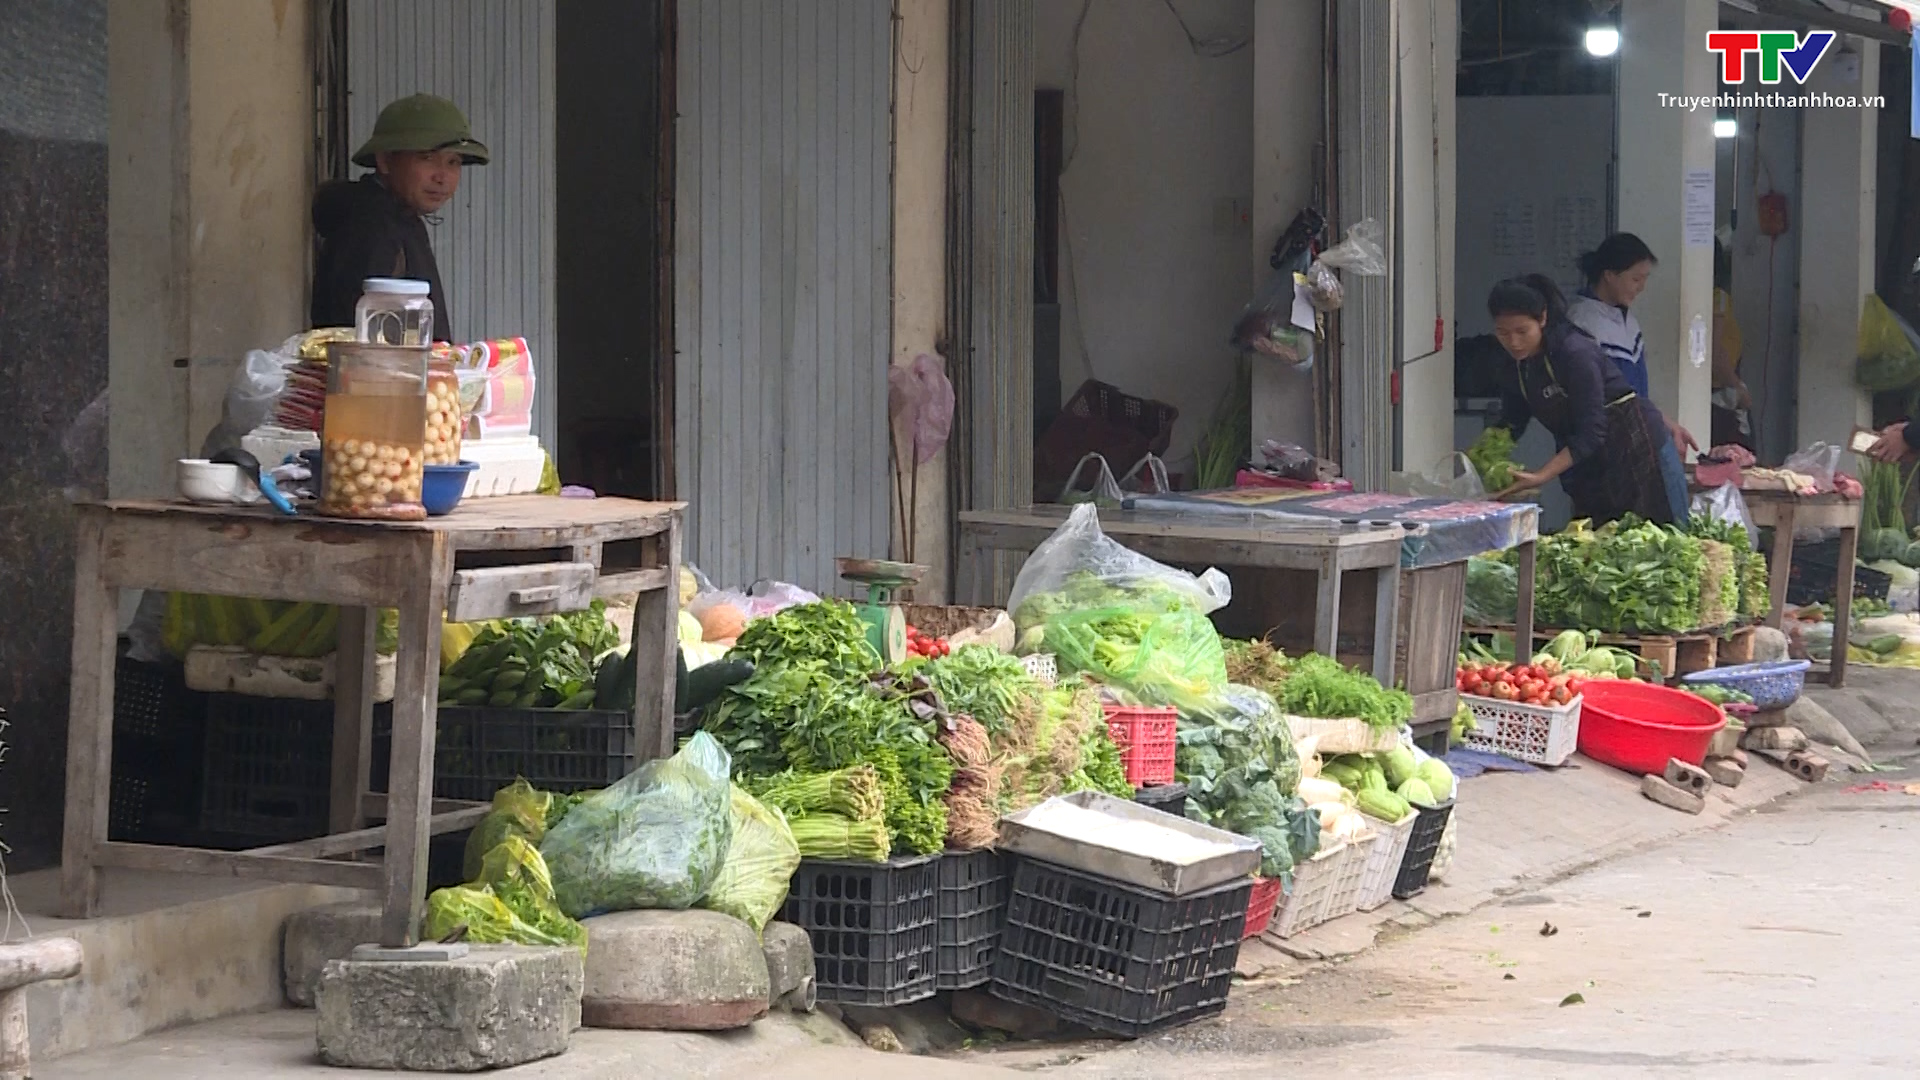 Cần sớm có giải pháp xóa bỏ “chợ cóc”, chợ tạm trên địa bàn thành phố Thanh Hóa  - Ảnh 4.